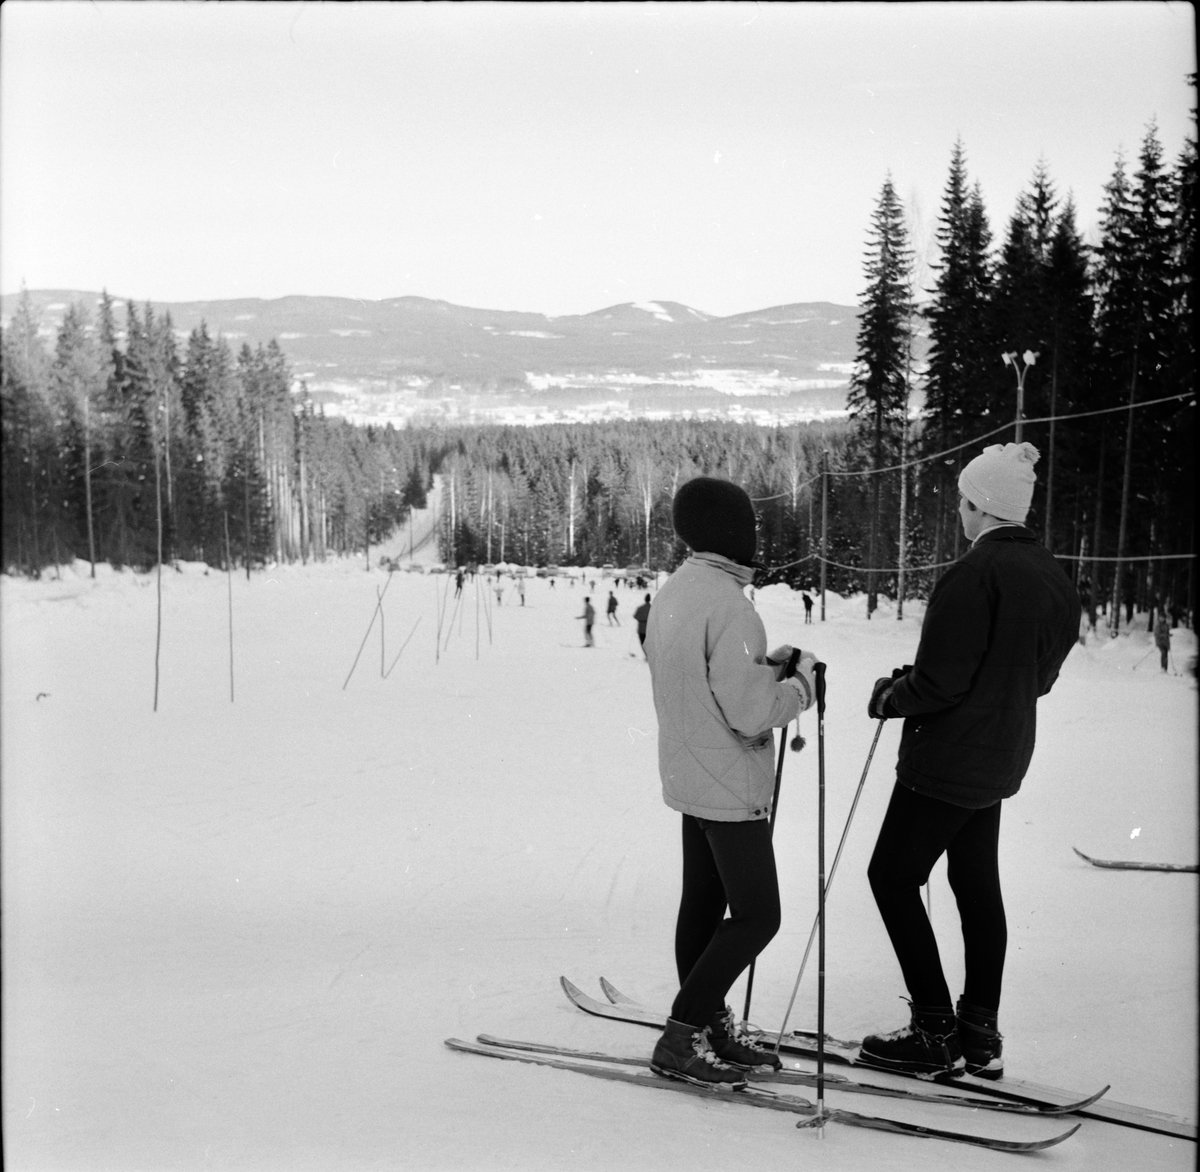 Arbrå,
Bilder från slalombacken,
Februari 1968